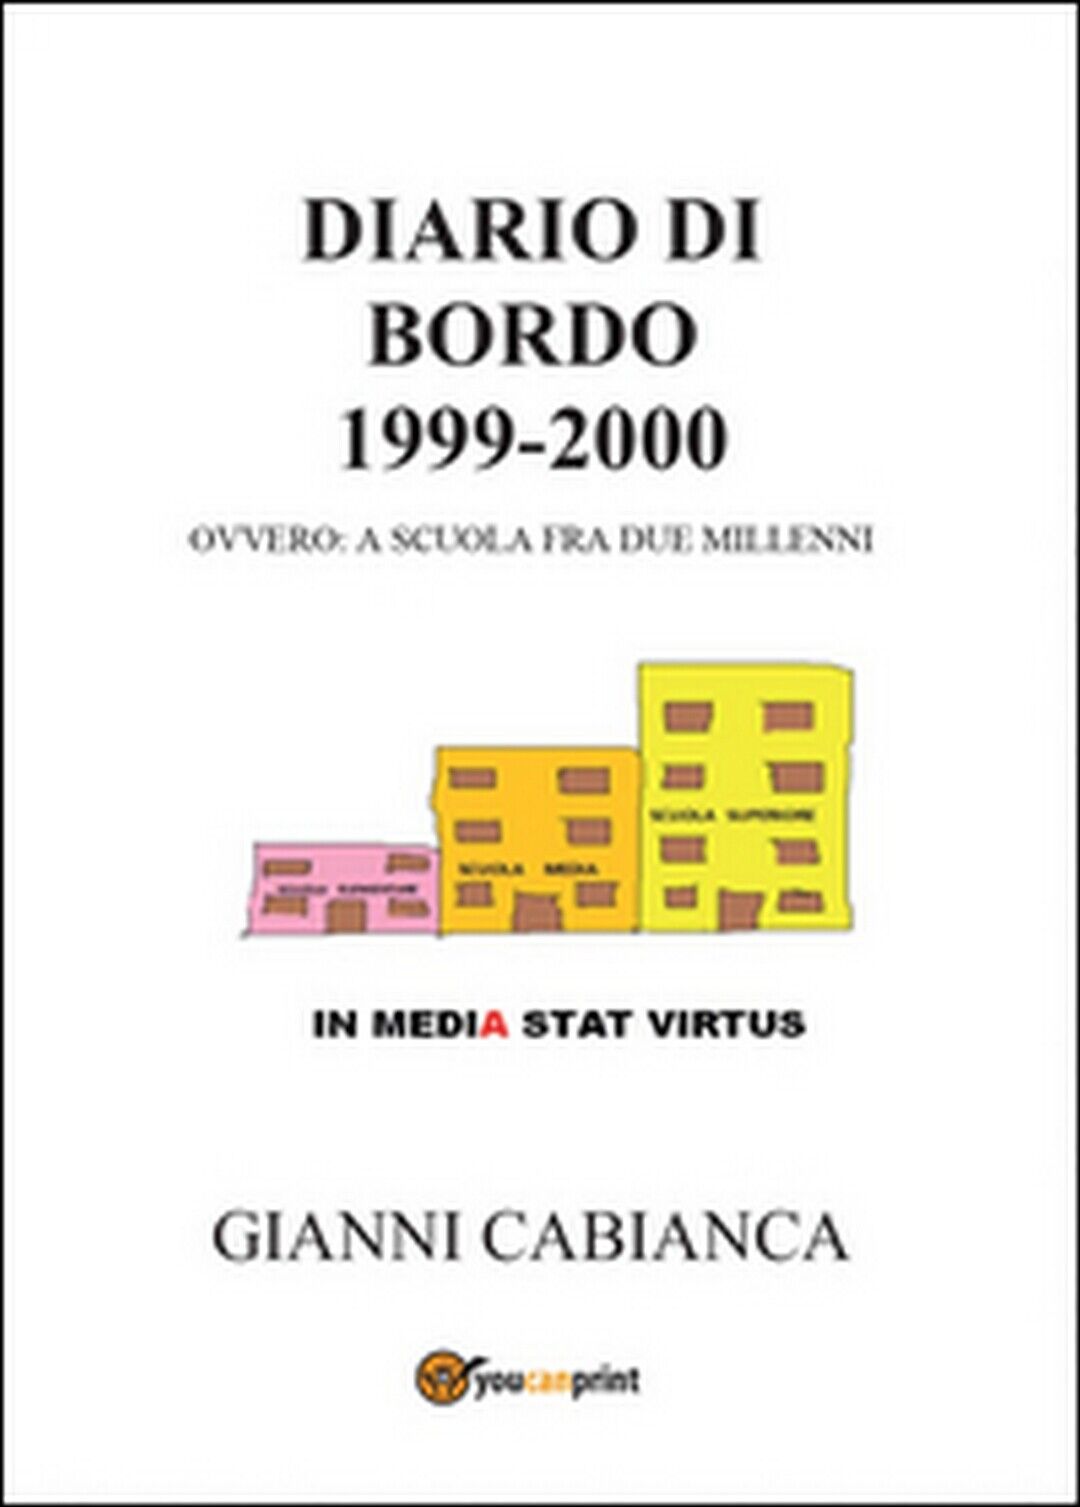 Diario di bordo (1999-2000) ovvero: a scuola fra due millenni, Gianni Cabianca